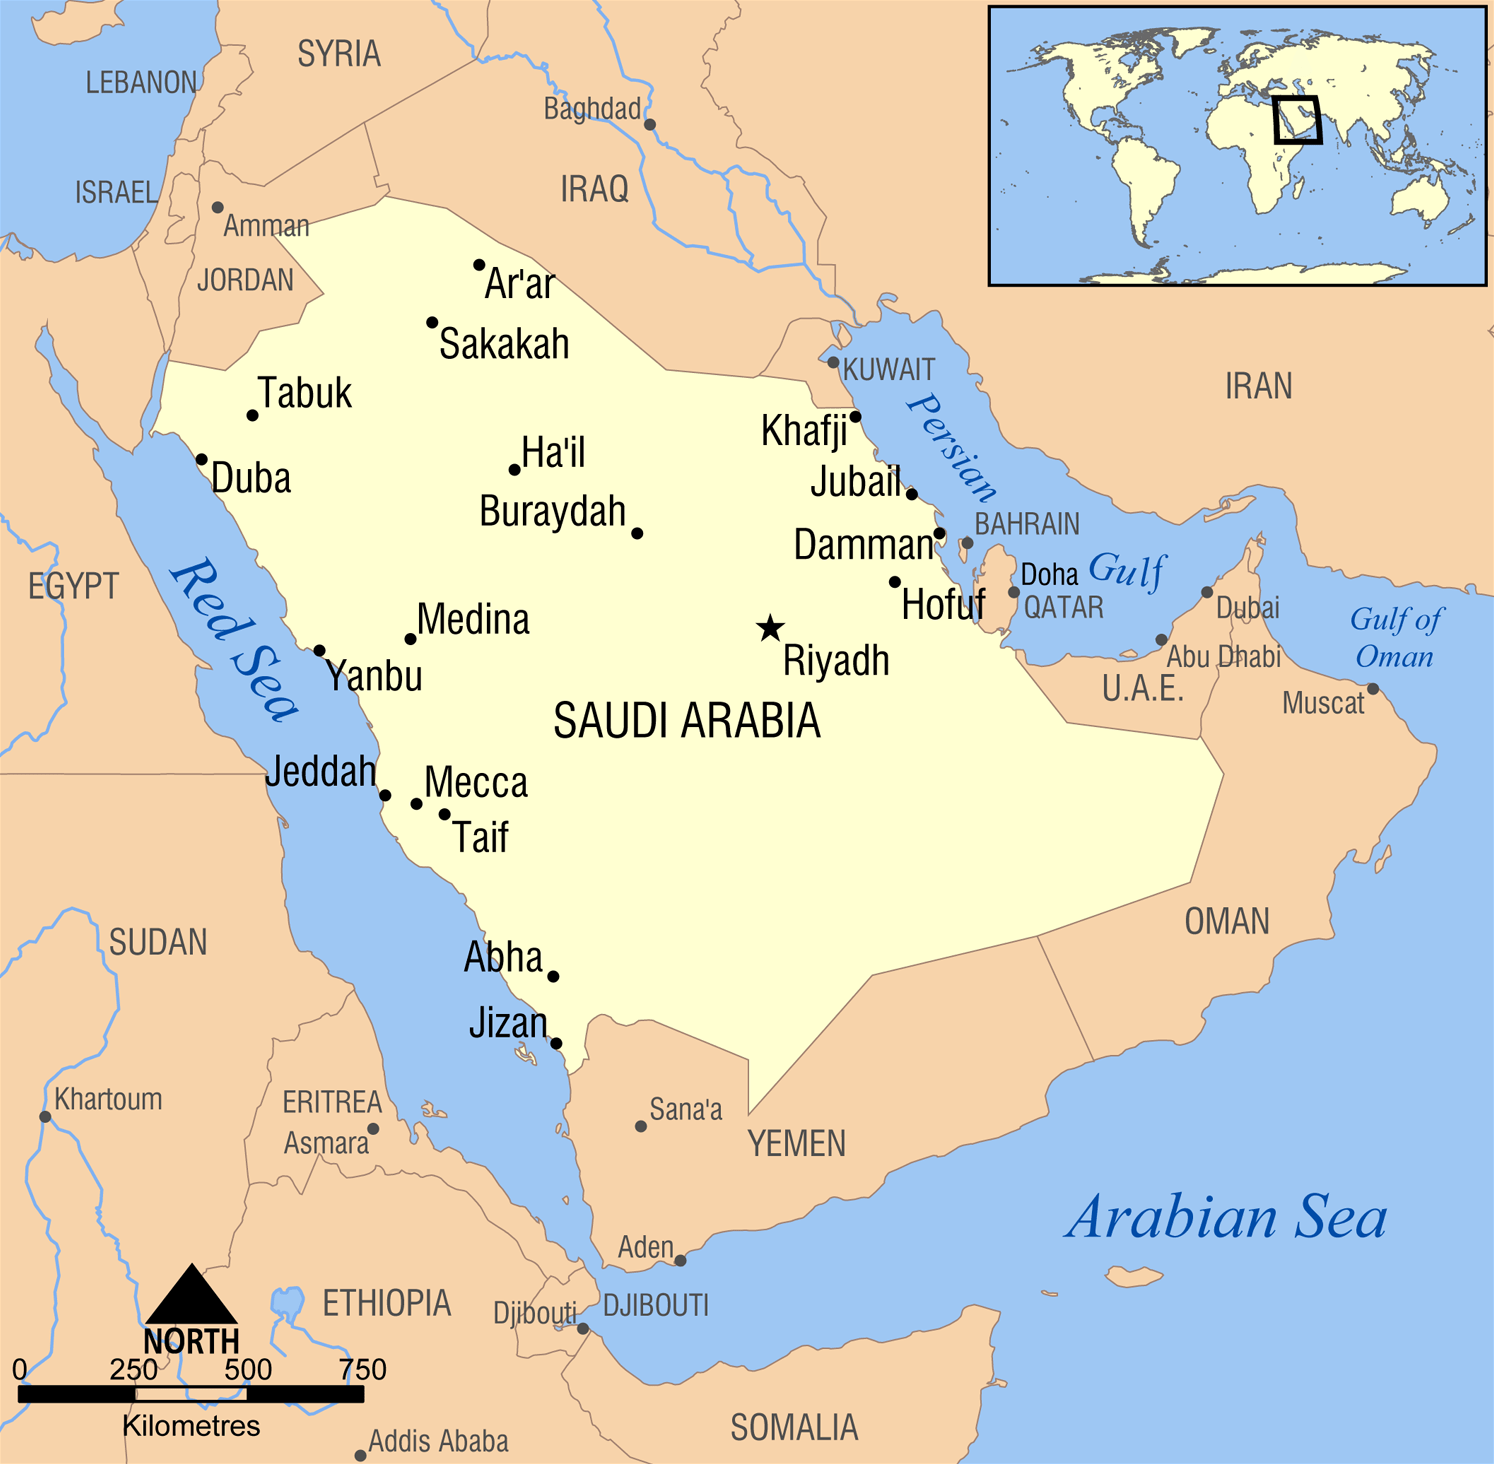 Saudi-Arabia